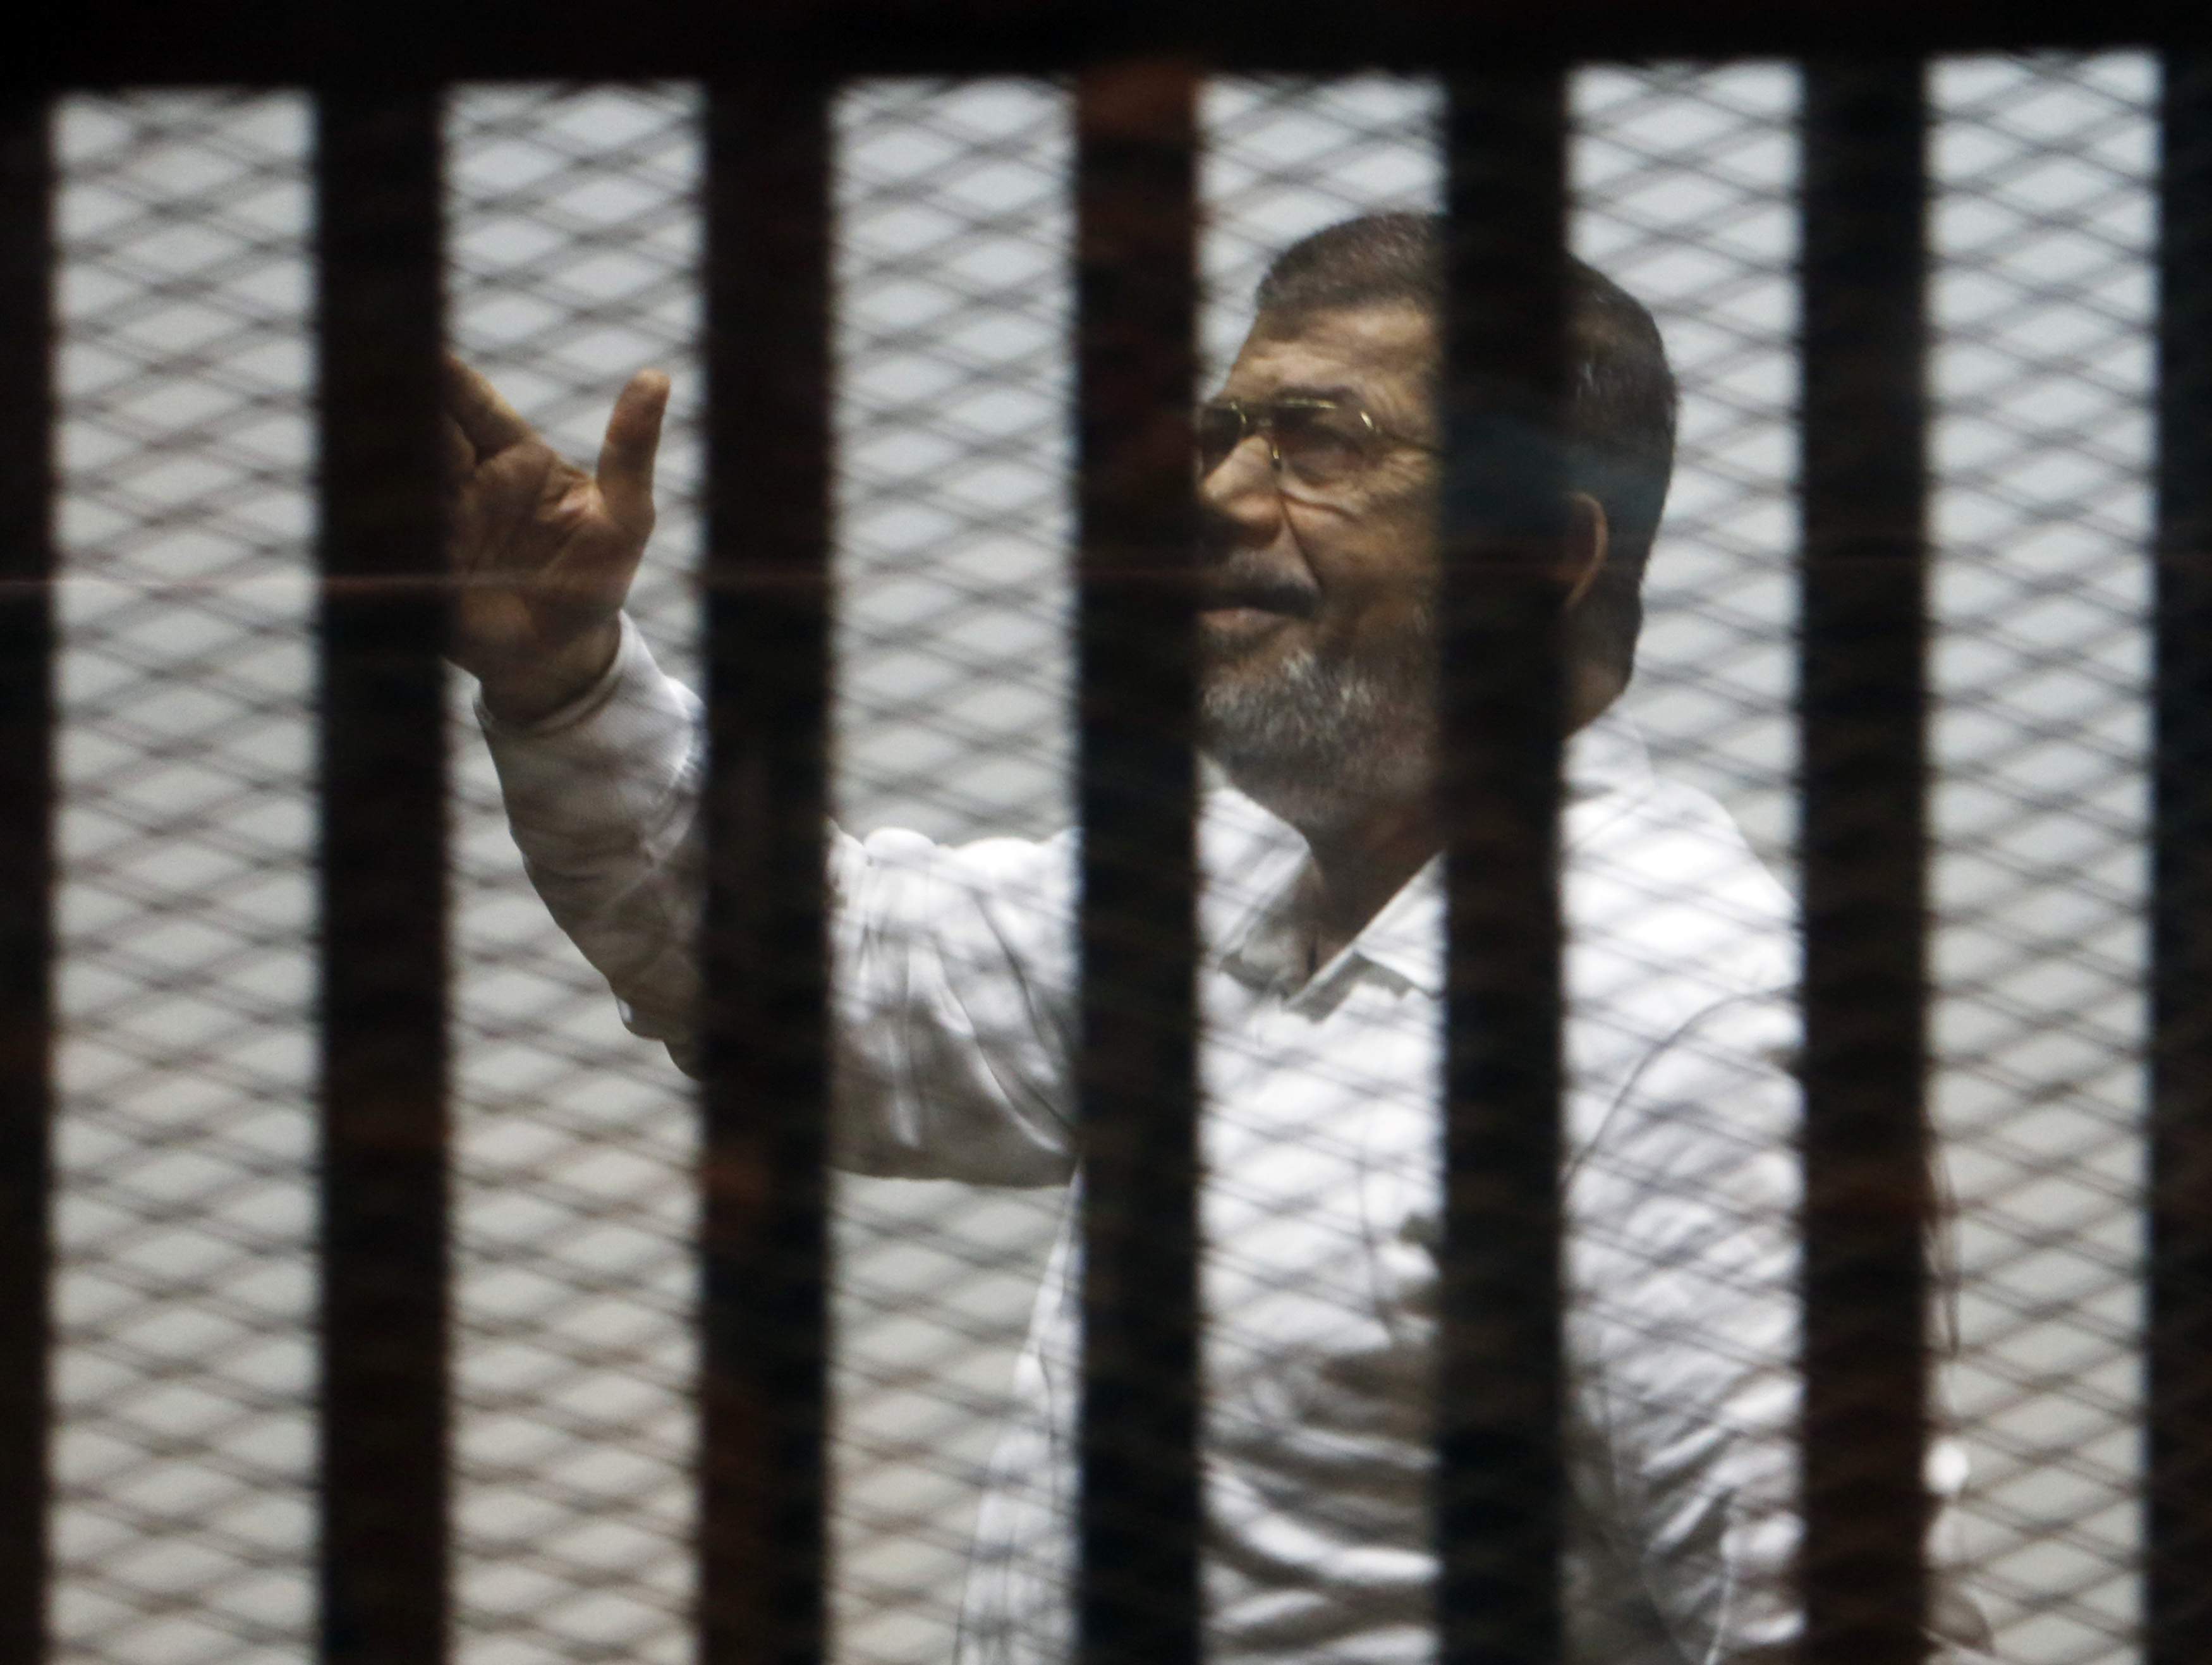 حكم نهائي بإلزام مرسي وقيادات الإخوان بدفع 250 مليون جنيه في قضية اقتحام السجون